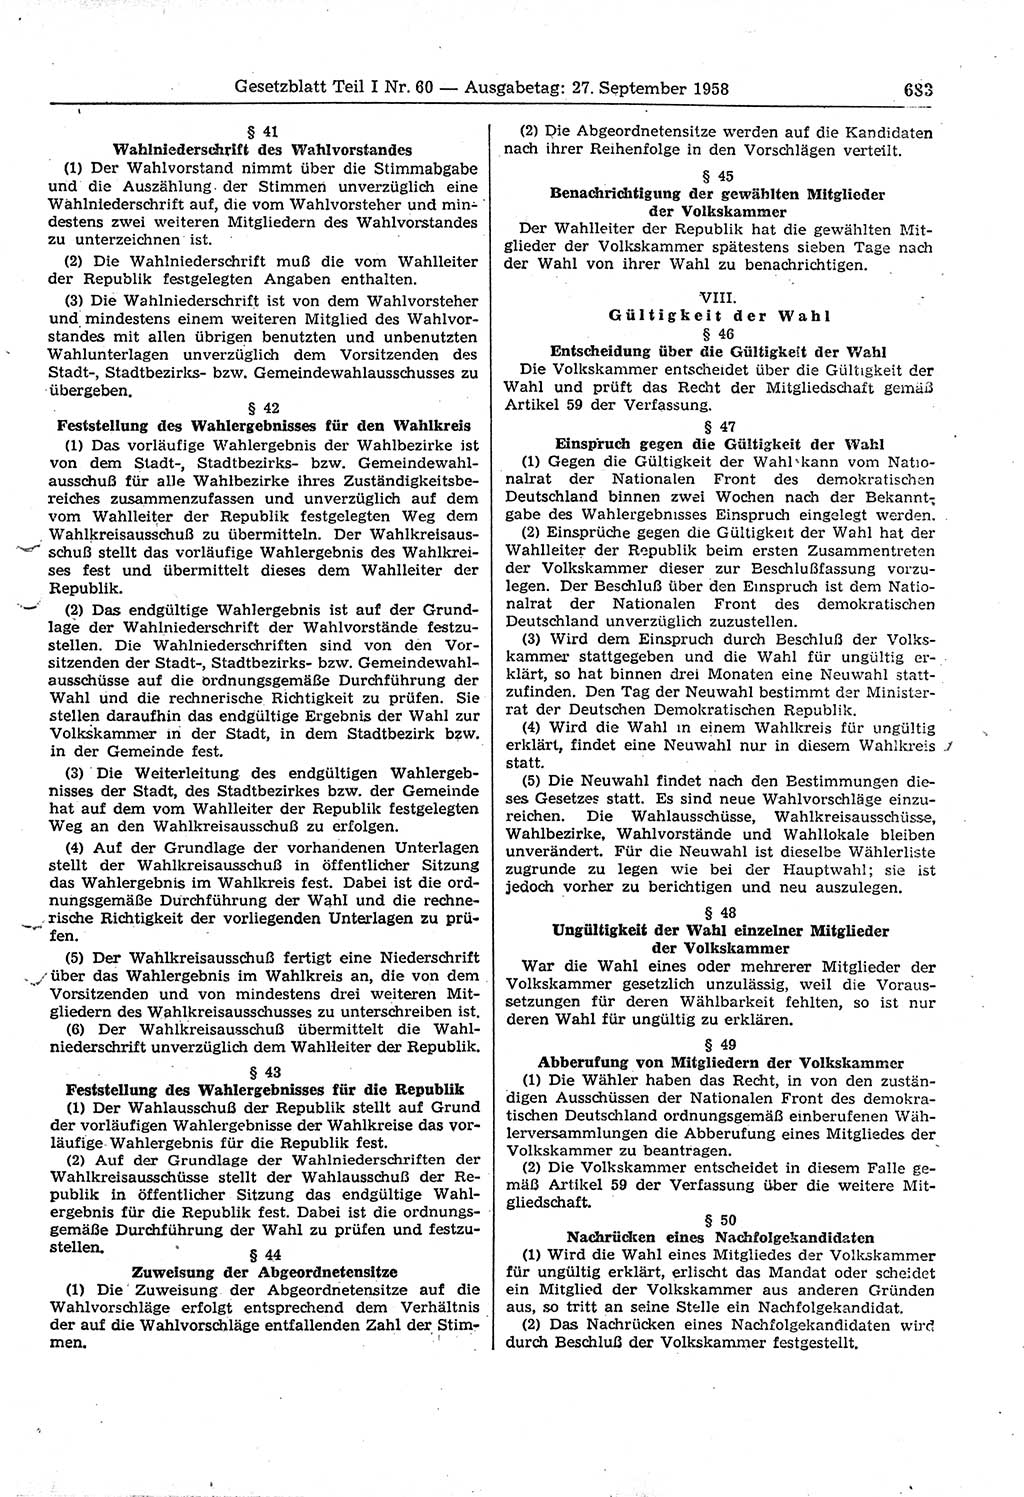 Gesetzblatt (GBl.) der Deutschen Demokratischen Republik (DDR) Teil Ⅰ 1958, Seite 683 (GBl. DDR Ⅰ 1958, S. 683)